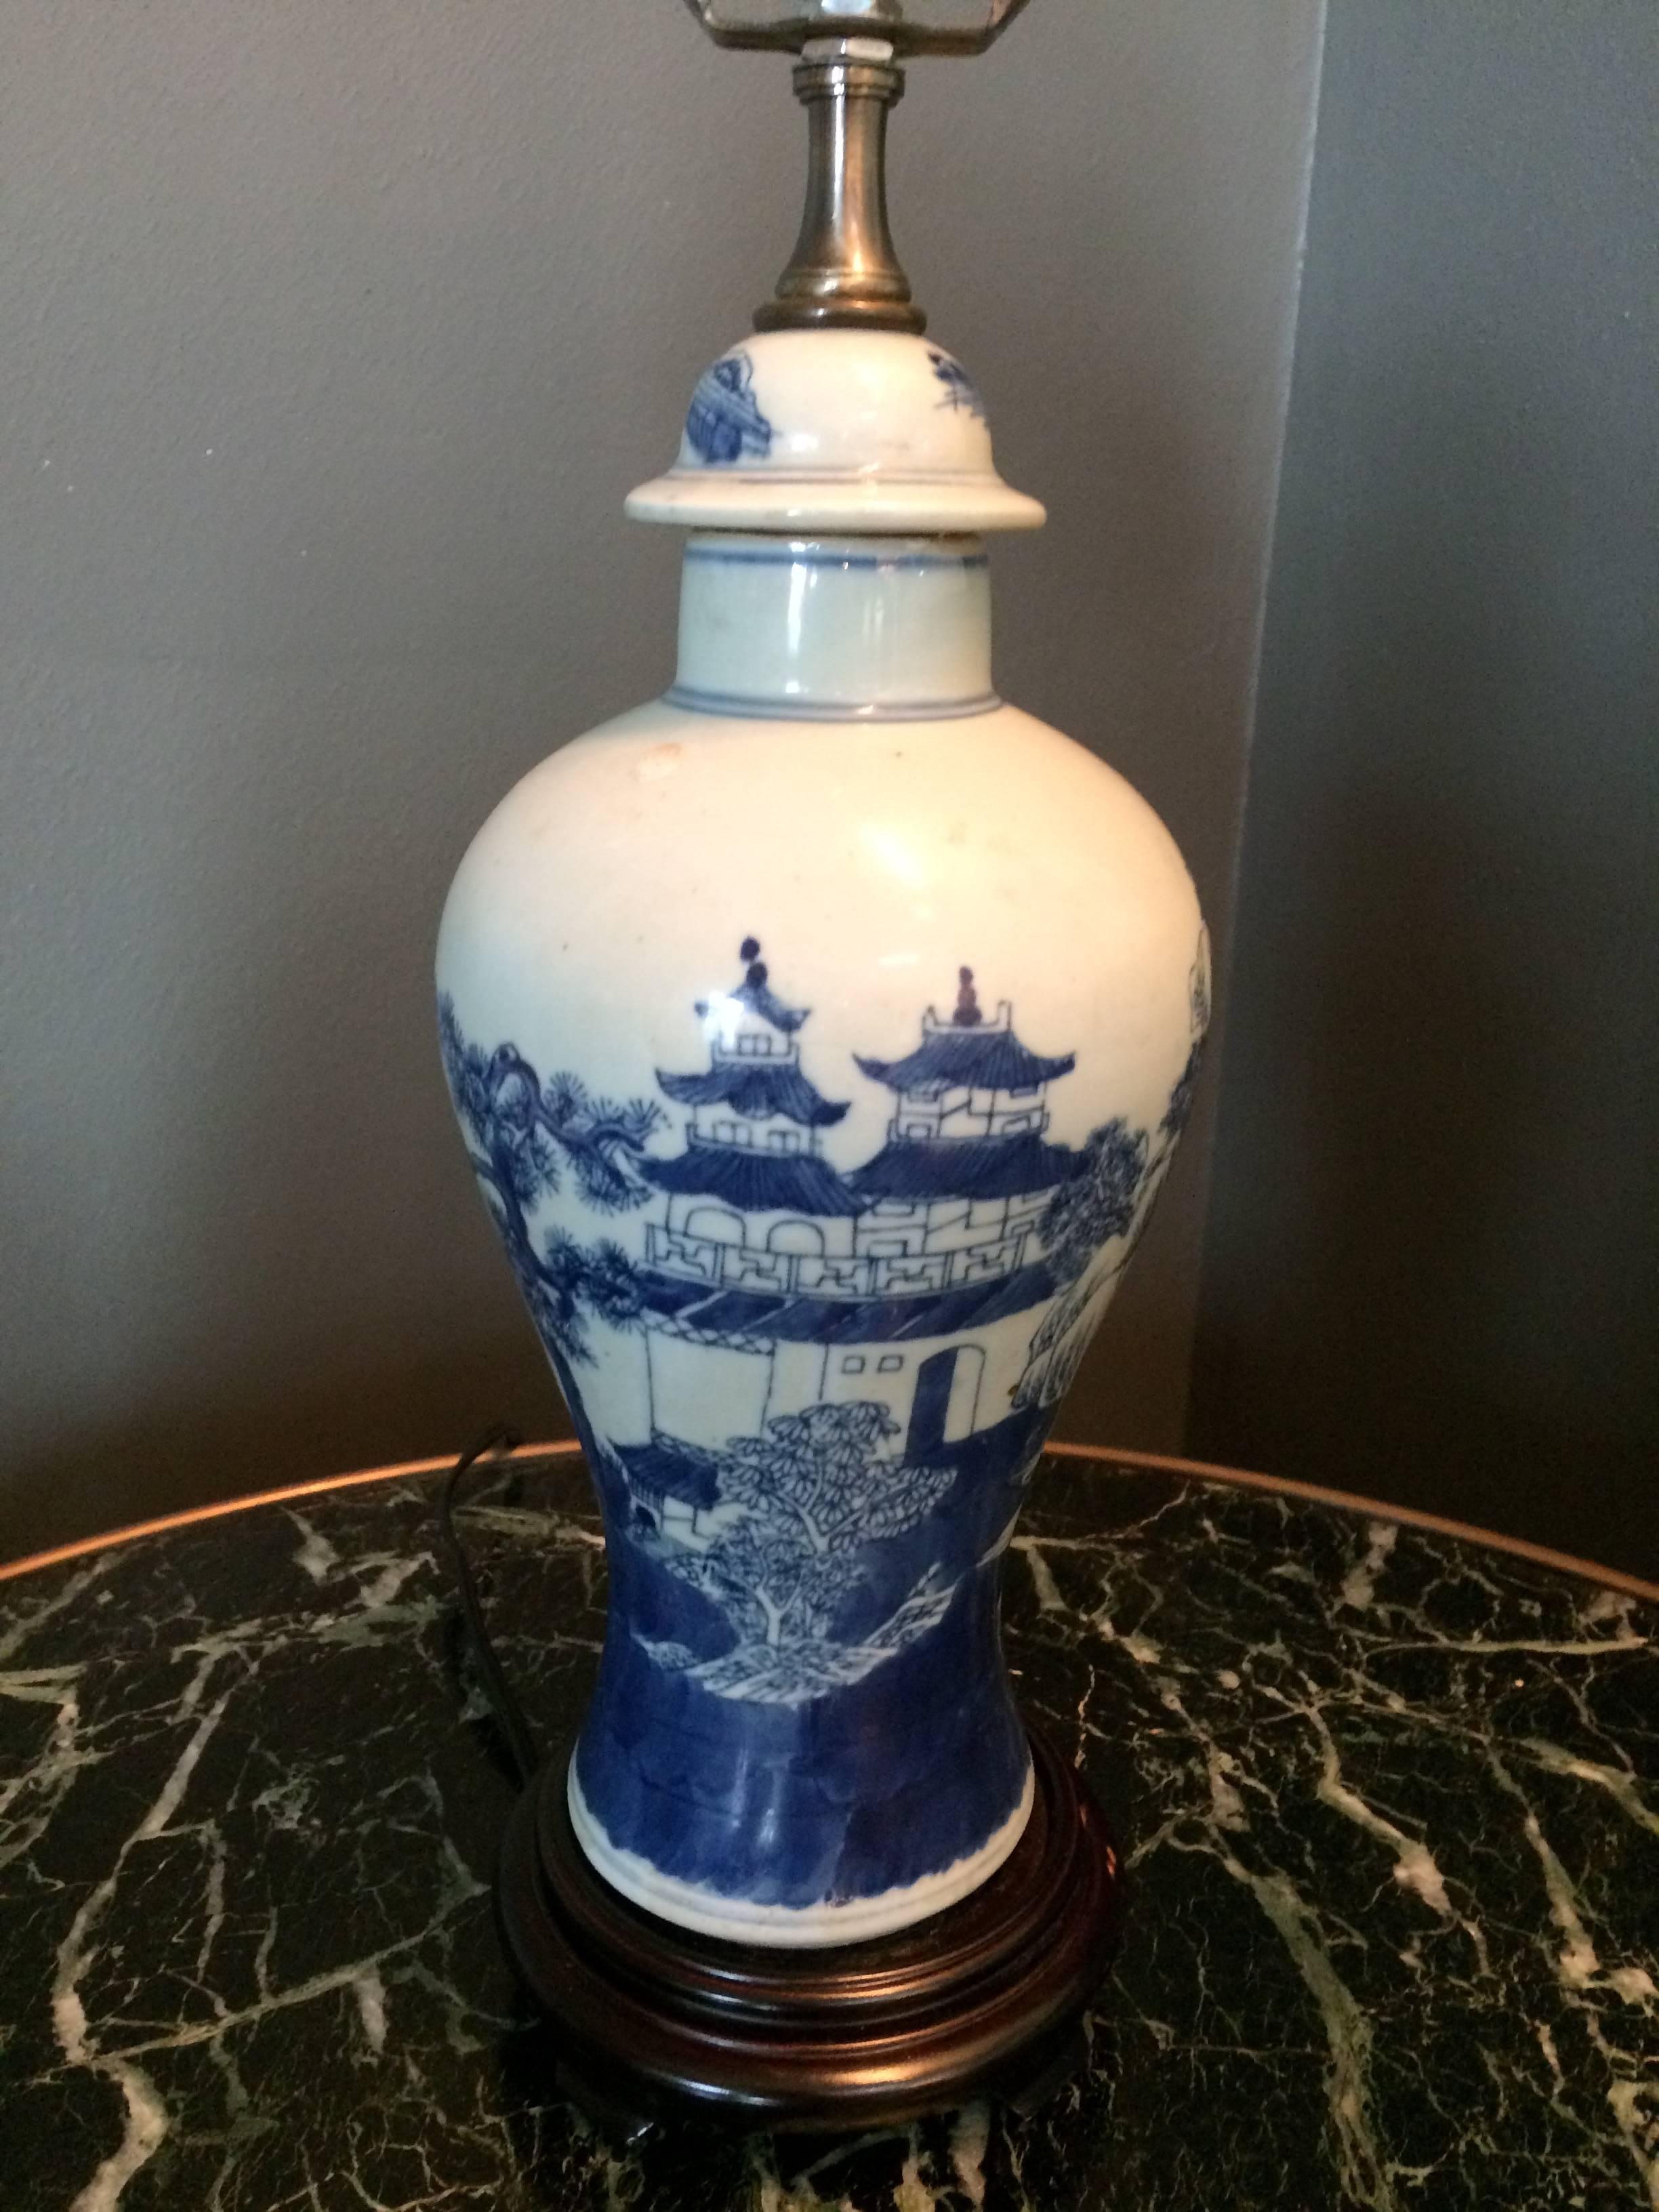 Une charmante petite jarre balustre d'exportation chinoise bleue et blanche montée en lampe sur une base en bois de teck.